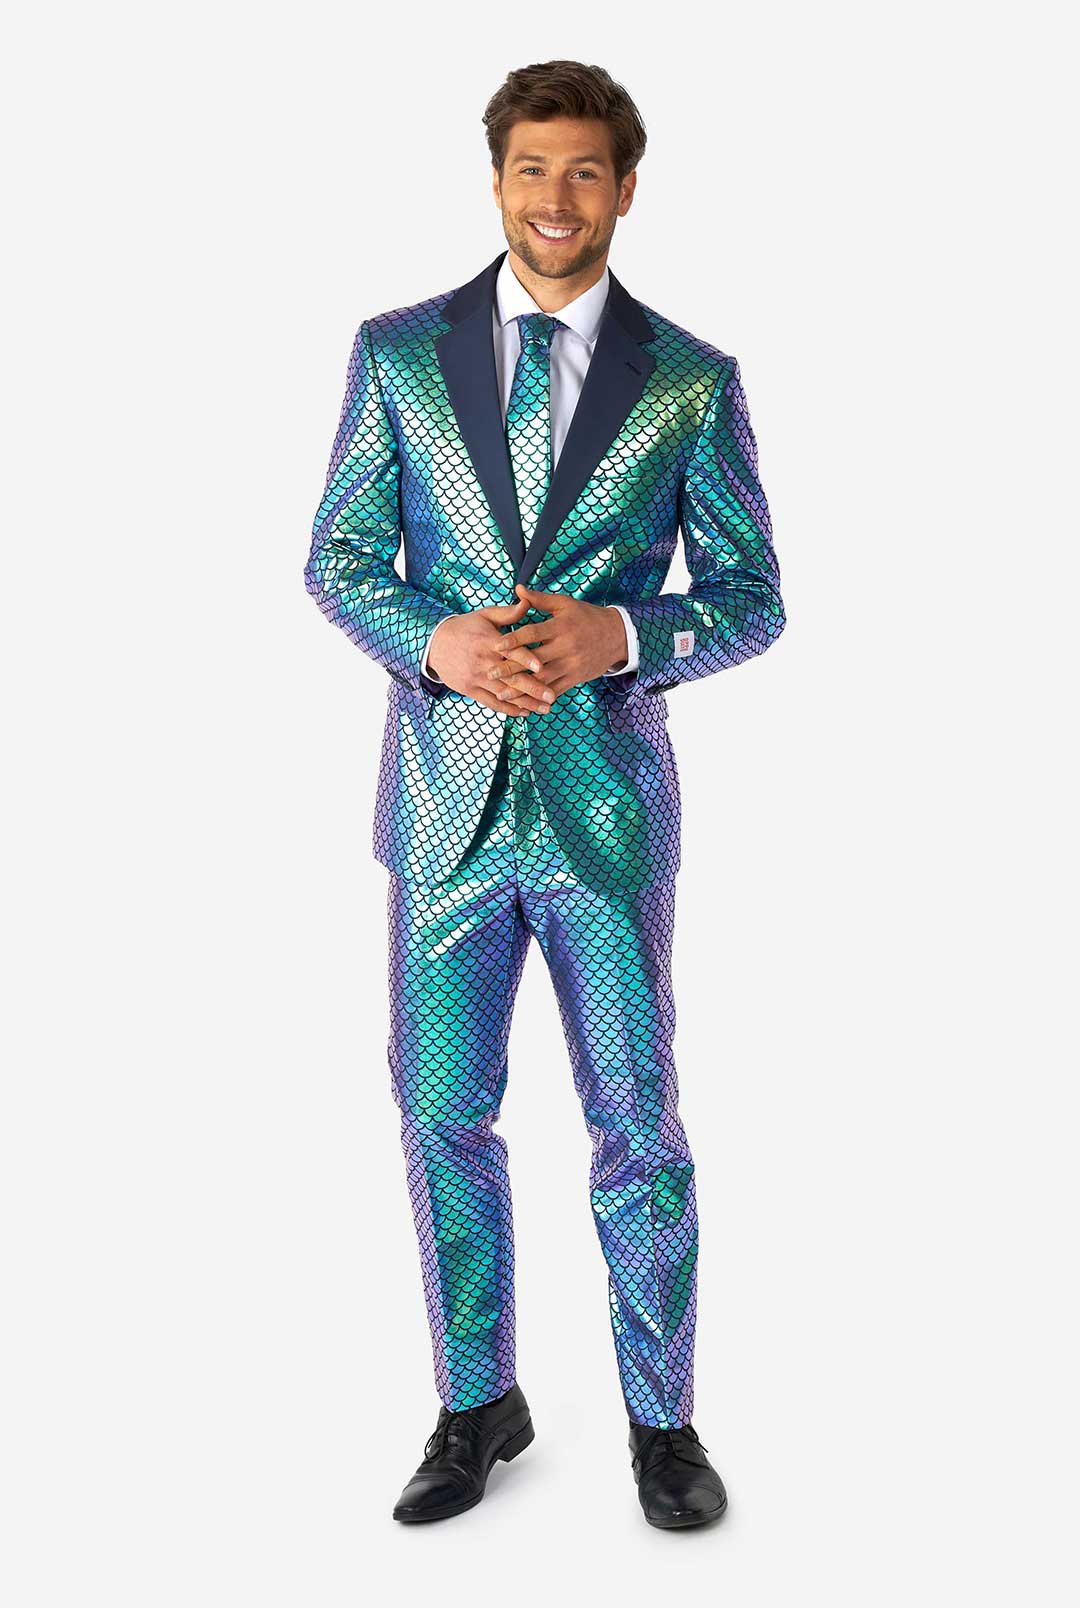 Fancy Fish, Shiny Blue Fish Scale Suit